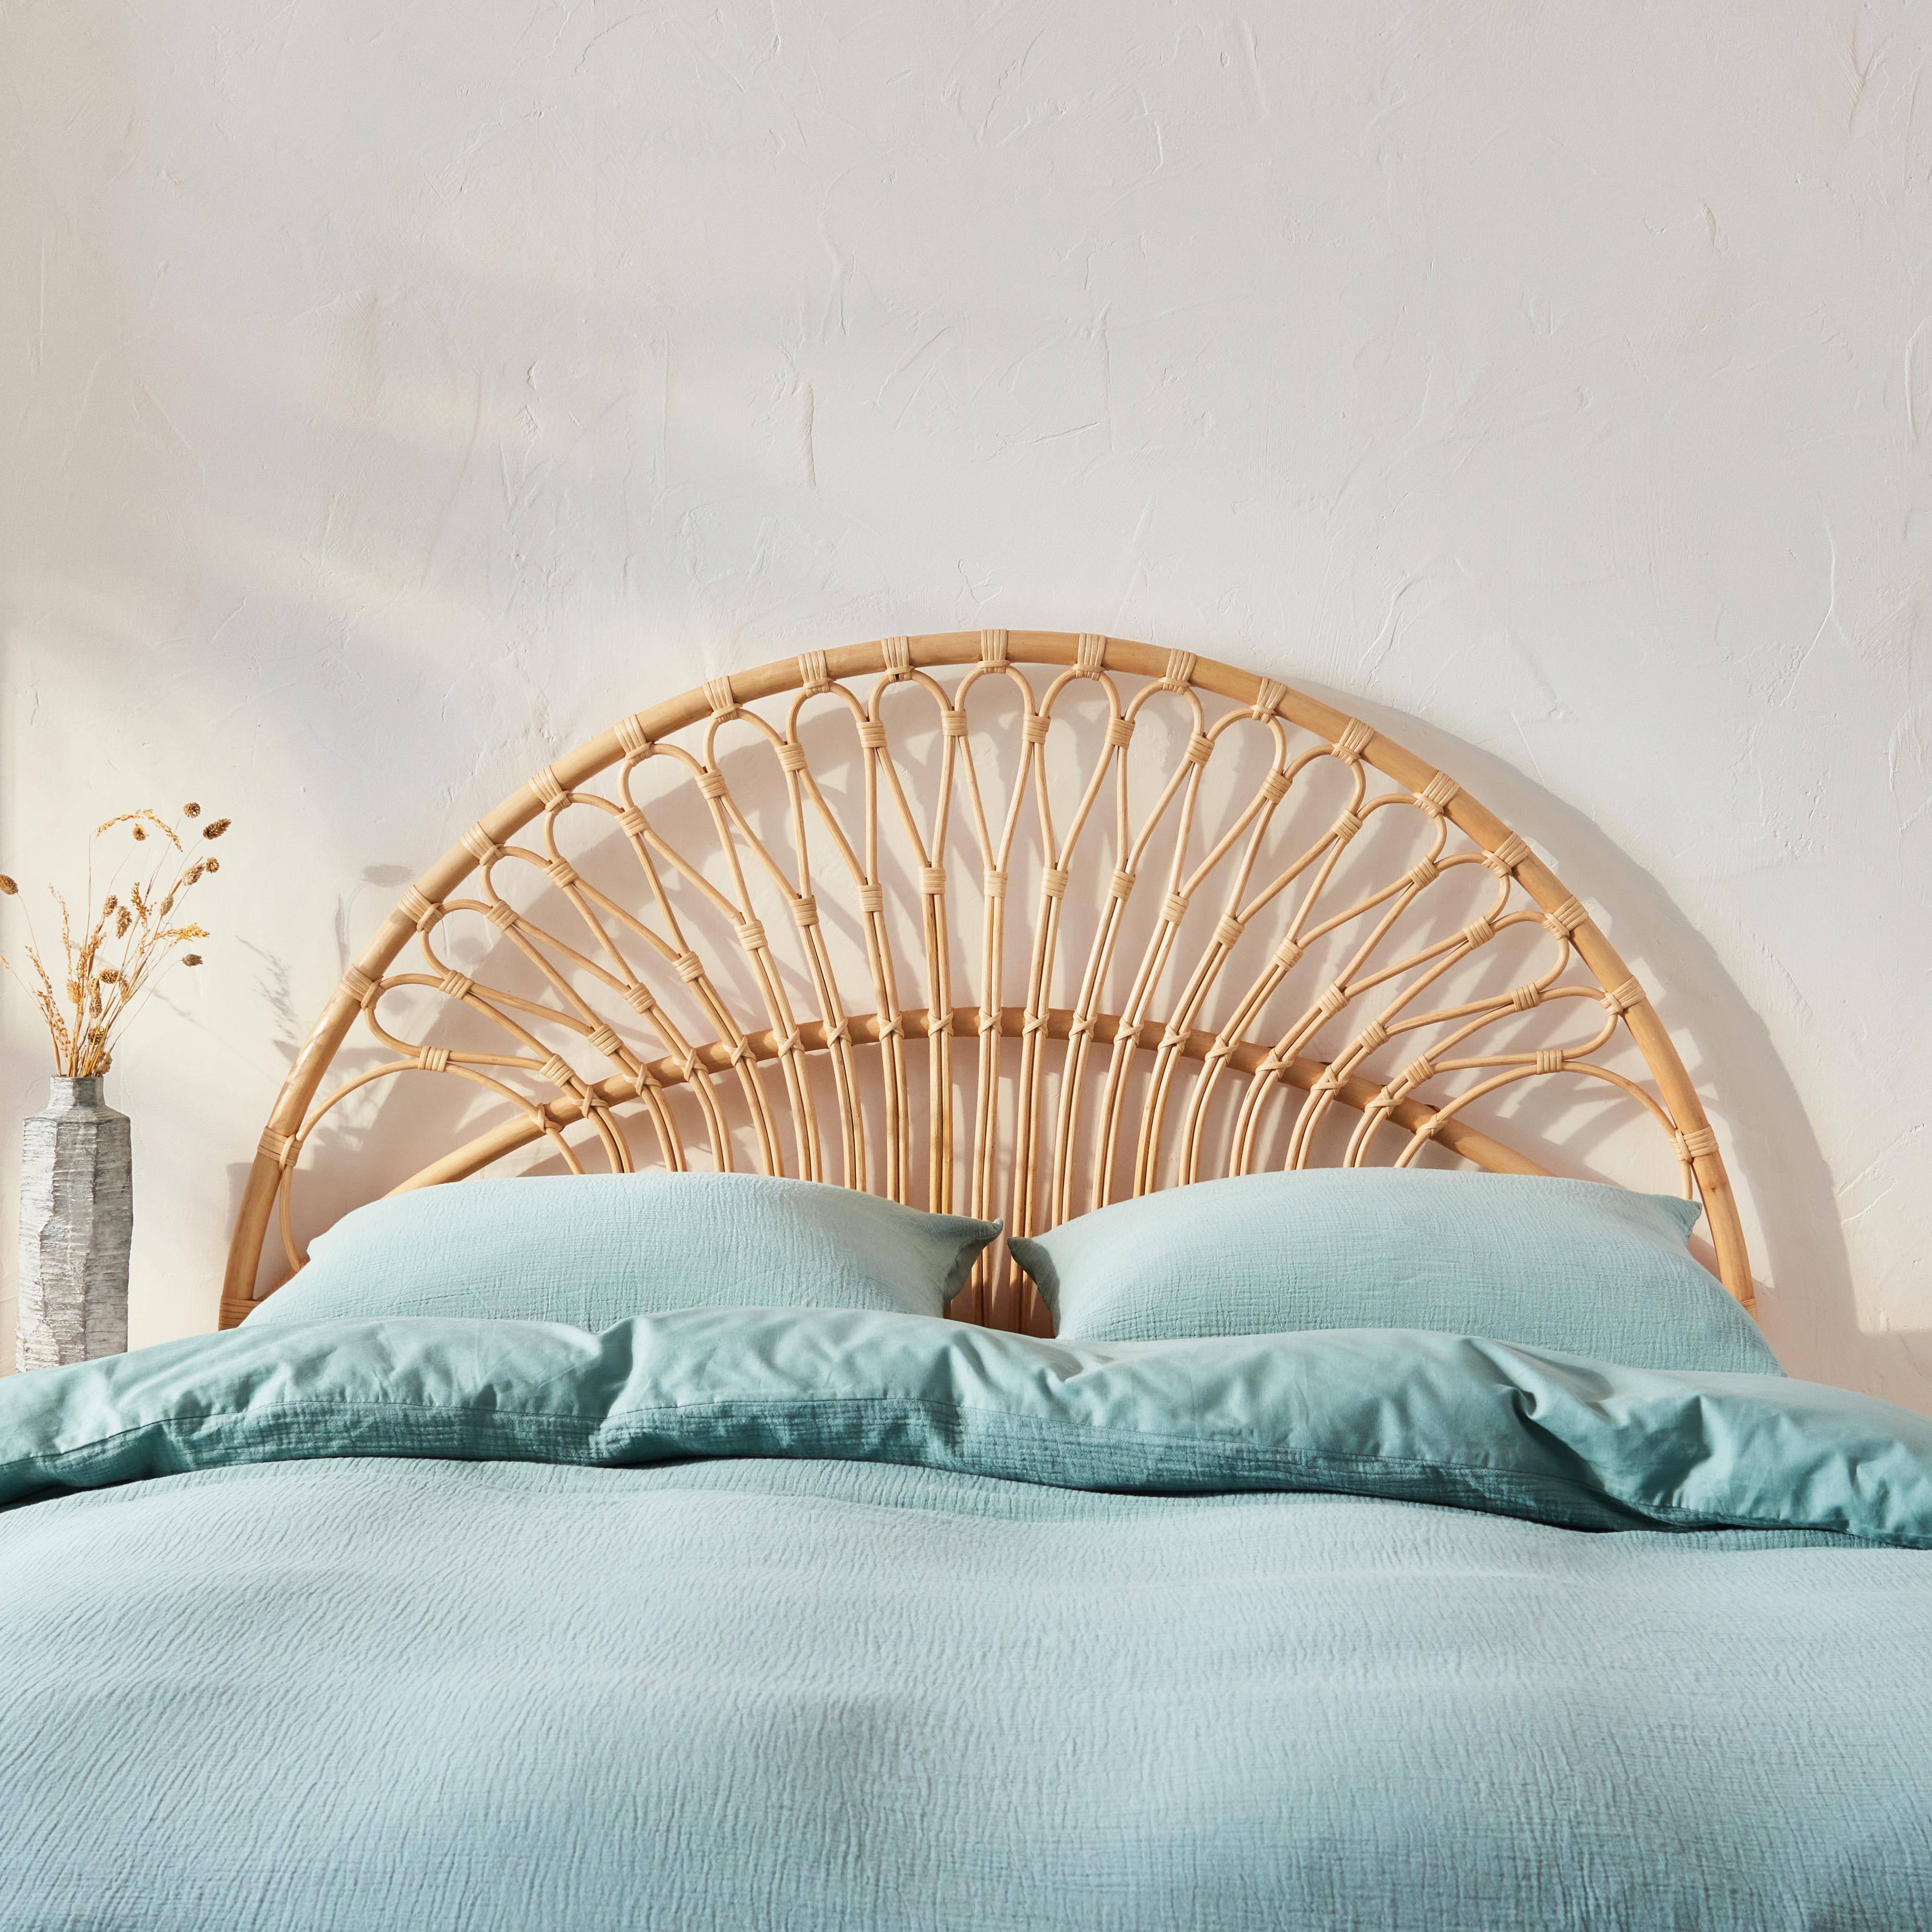 Kopfteil aus Rattan Natur passend für Betten mit einer Breite von 140 cm, L 140 x T 3 x H 115 cm Photo2